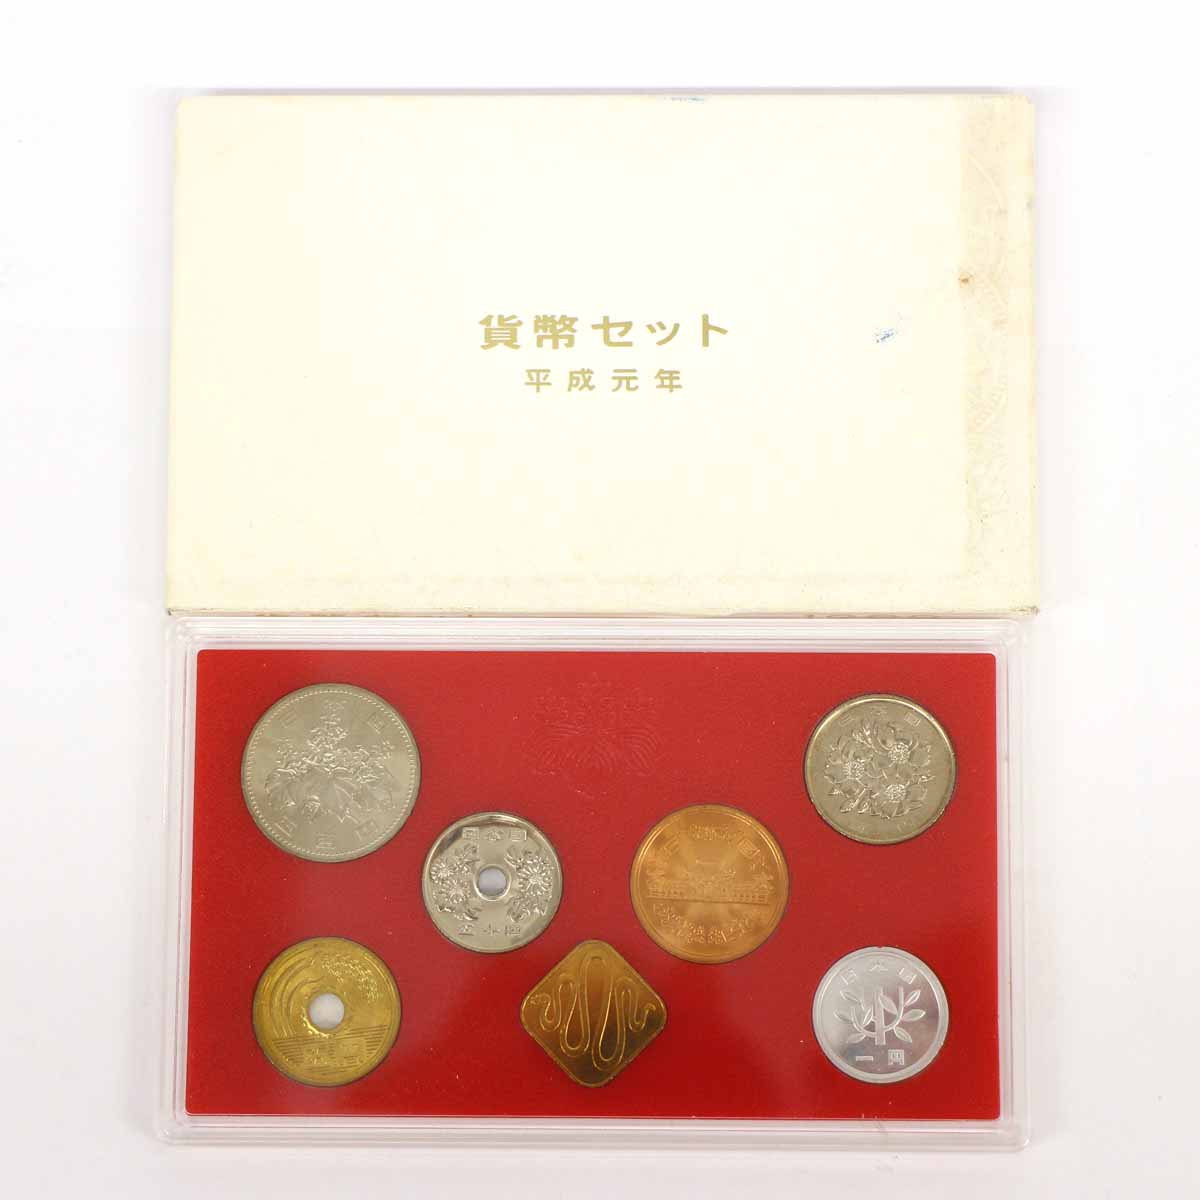 ◆硬貨 平成元年 貨幣セット 大蔵省造幣局◆ -  【中古】